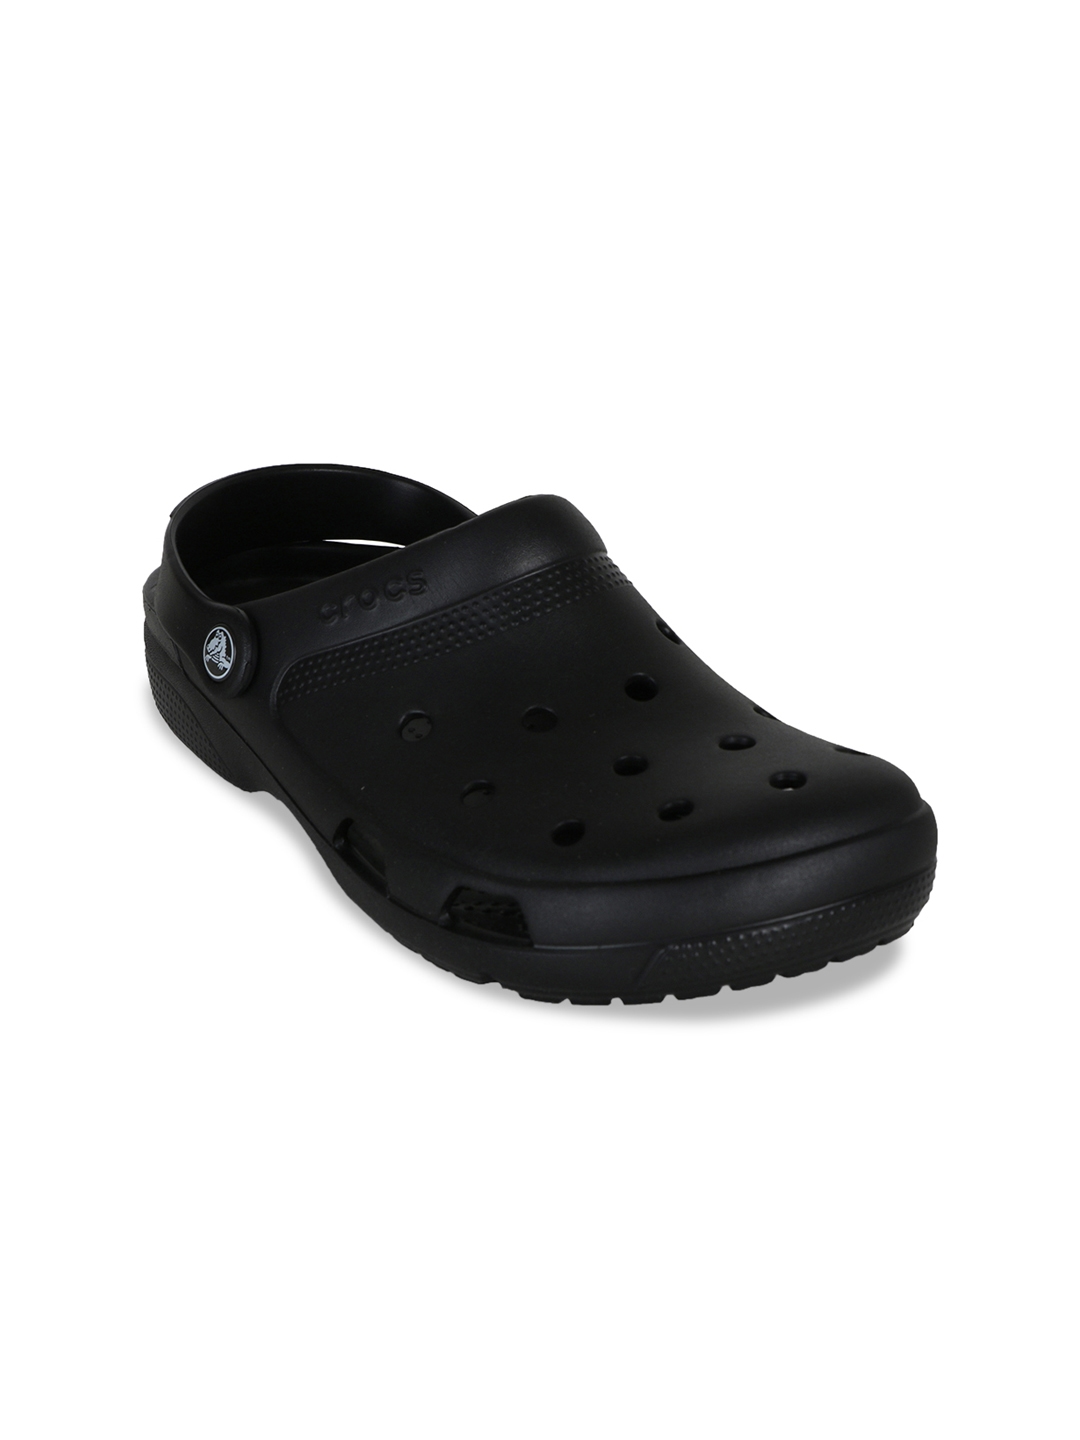 crocs black solid clogs Cheaper Than 